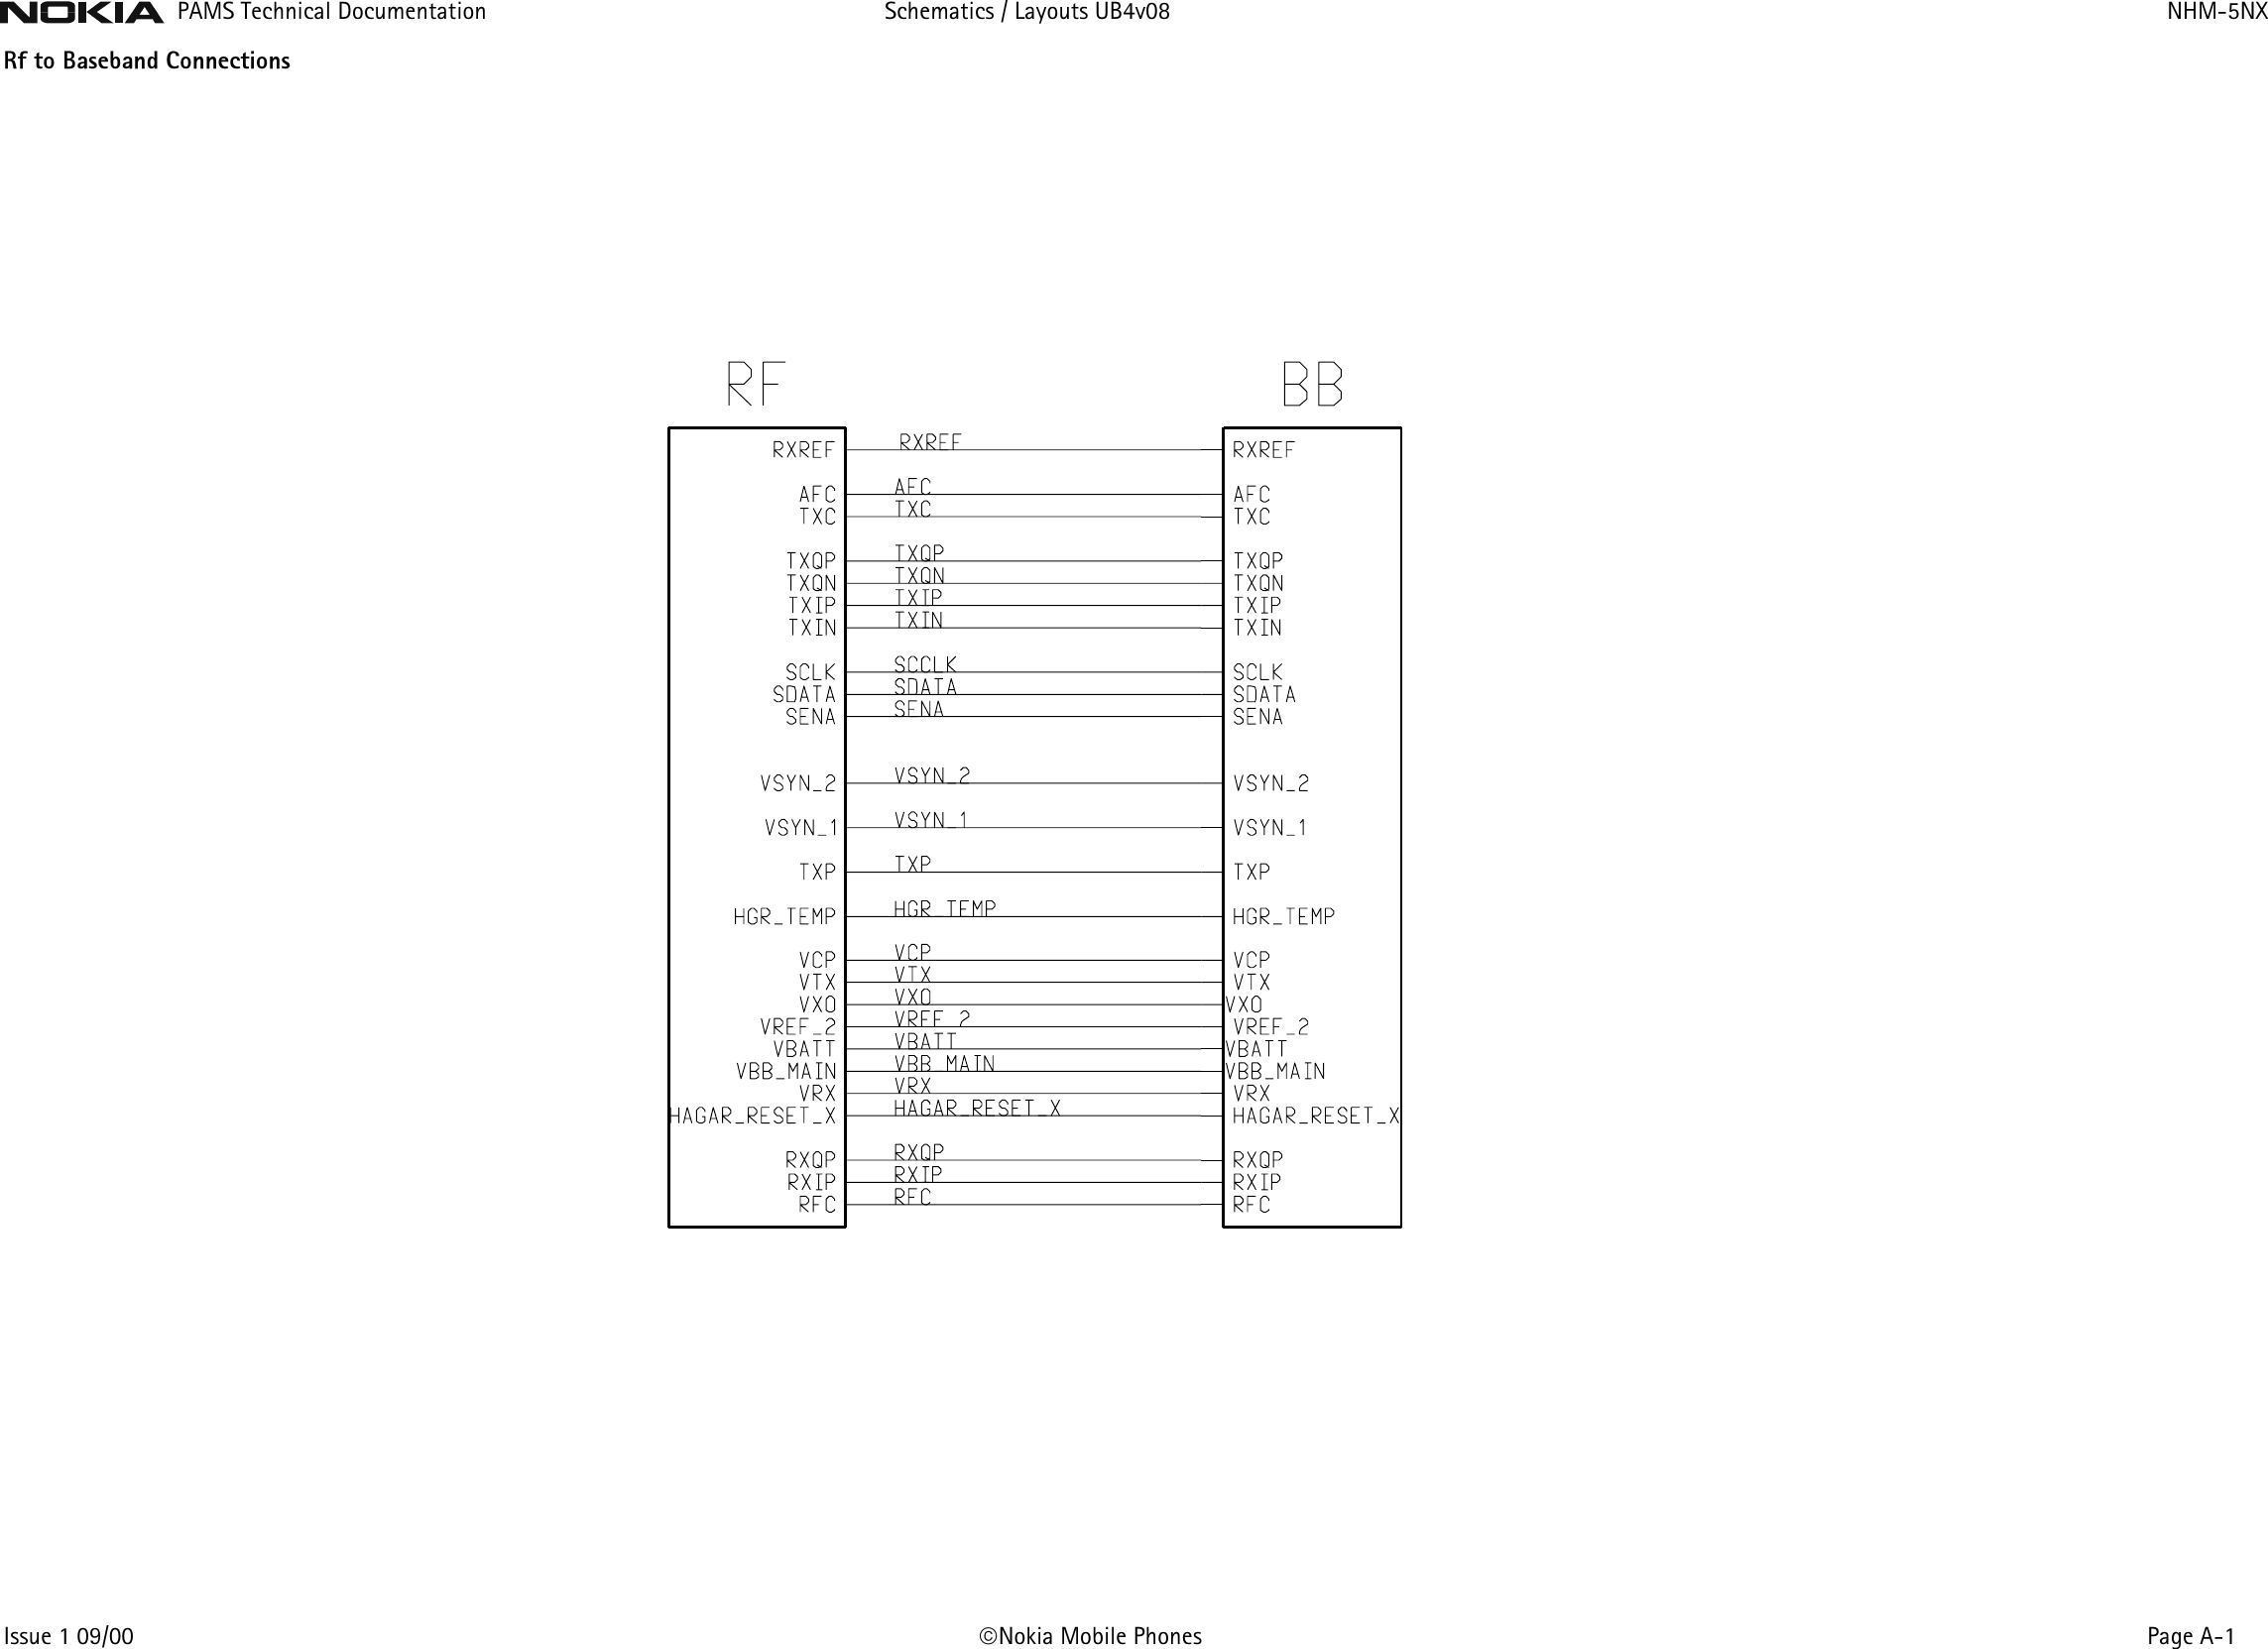 Page 1 of 8 - Nokia 3310 Nhm-5nx Schematics